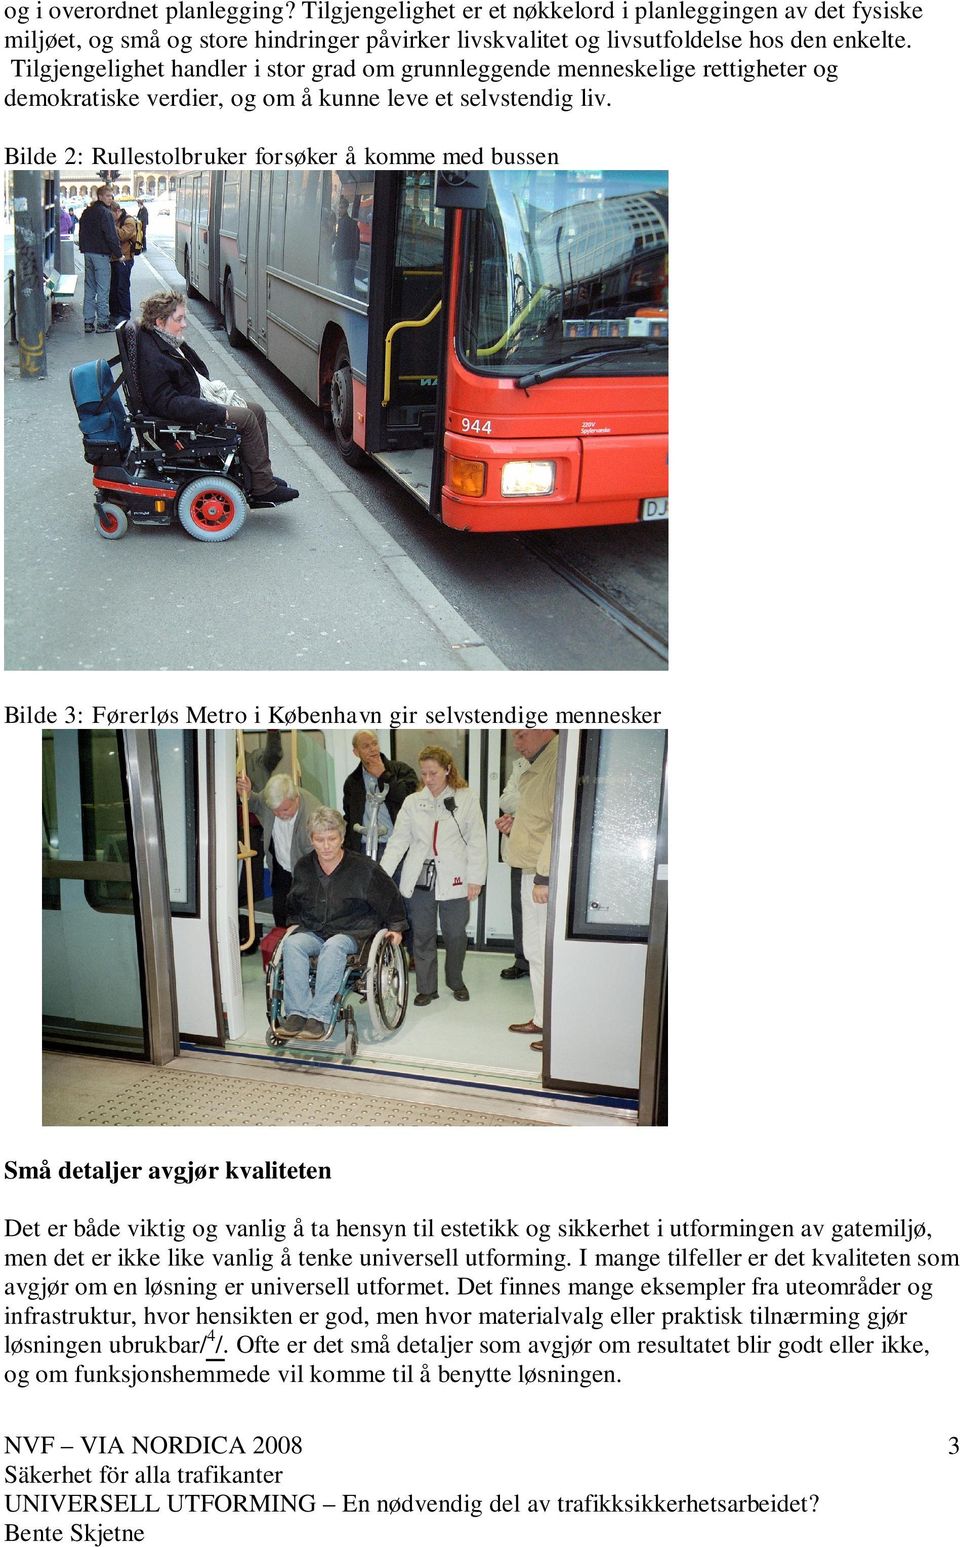 Bilde 2: Rullestolbruker forsøker å komme med bussen Bilde 3: Førerløs Metro i København gir selvstendige mennesker Små detaljer avgjør kvaliteten Det er både viktig og vanlig å ta hensyn til